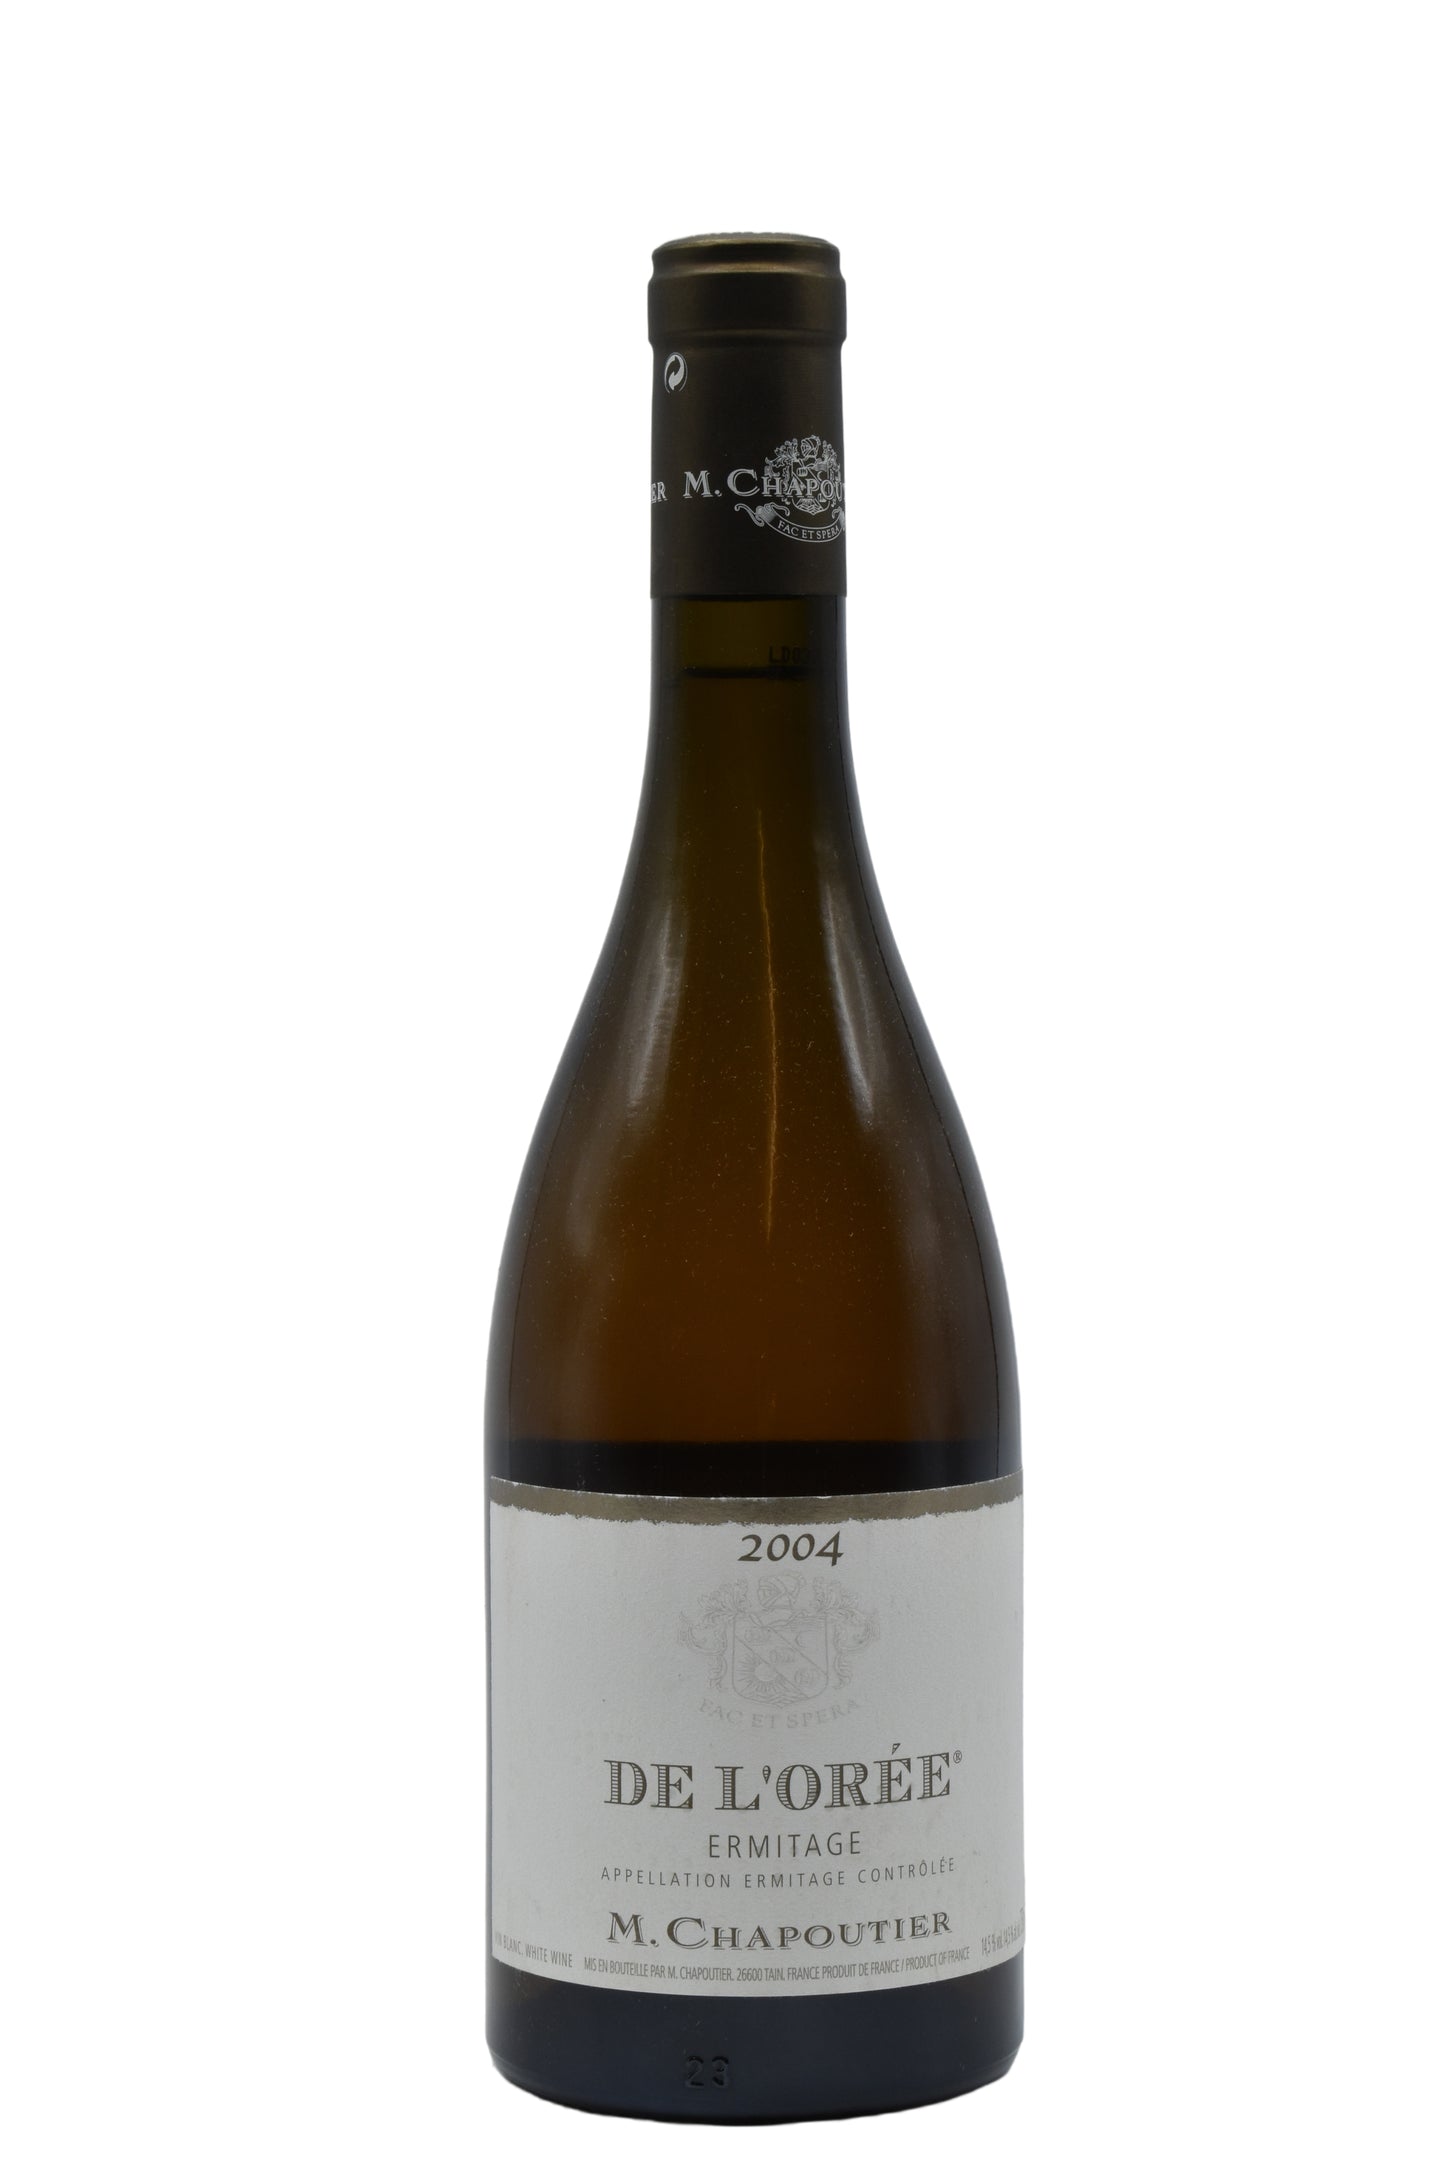 2004 M. Chapoutier, Ermitage Blanc, de l'Oree 750ml - Walker Wine Co.